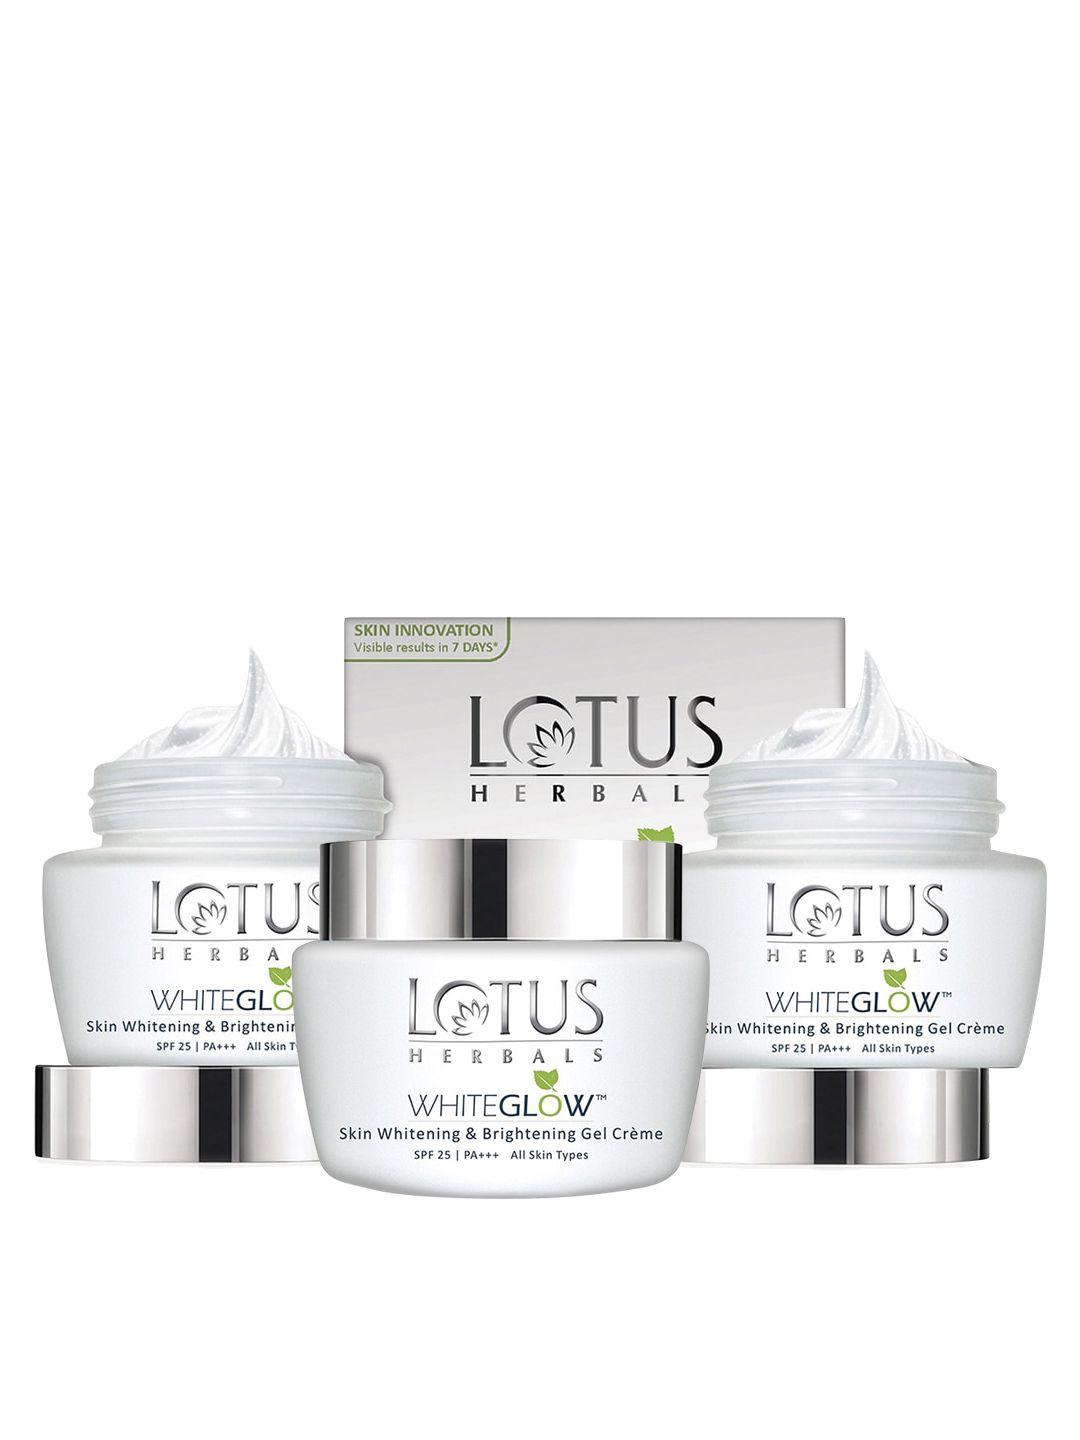 lotus herbals set of 3 whiteglow skin whitening & brightening spf 25 gel creme - 60 g each